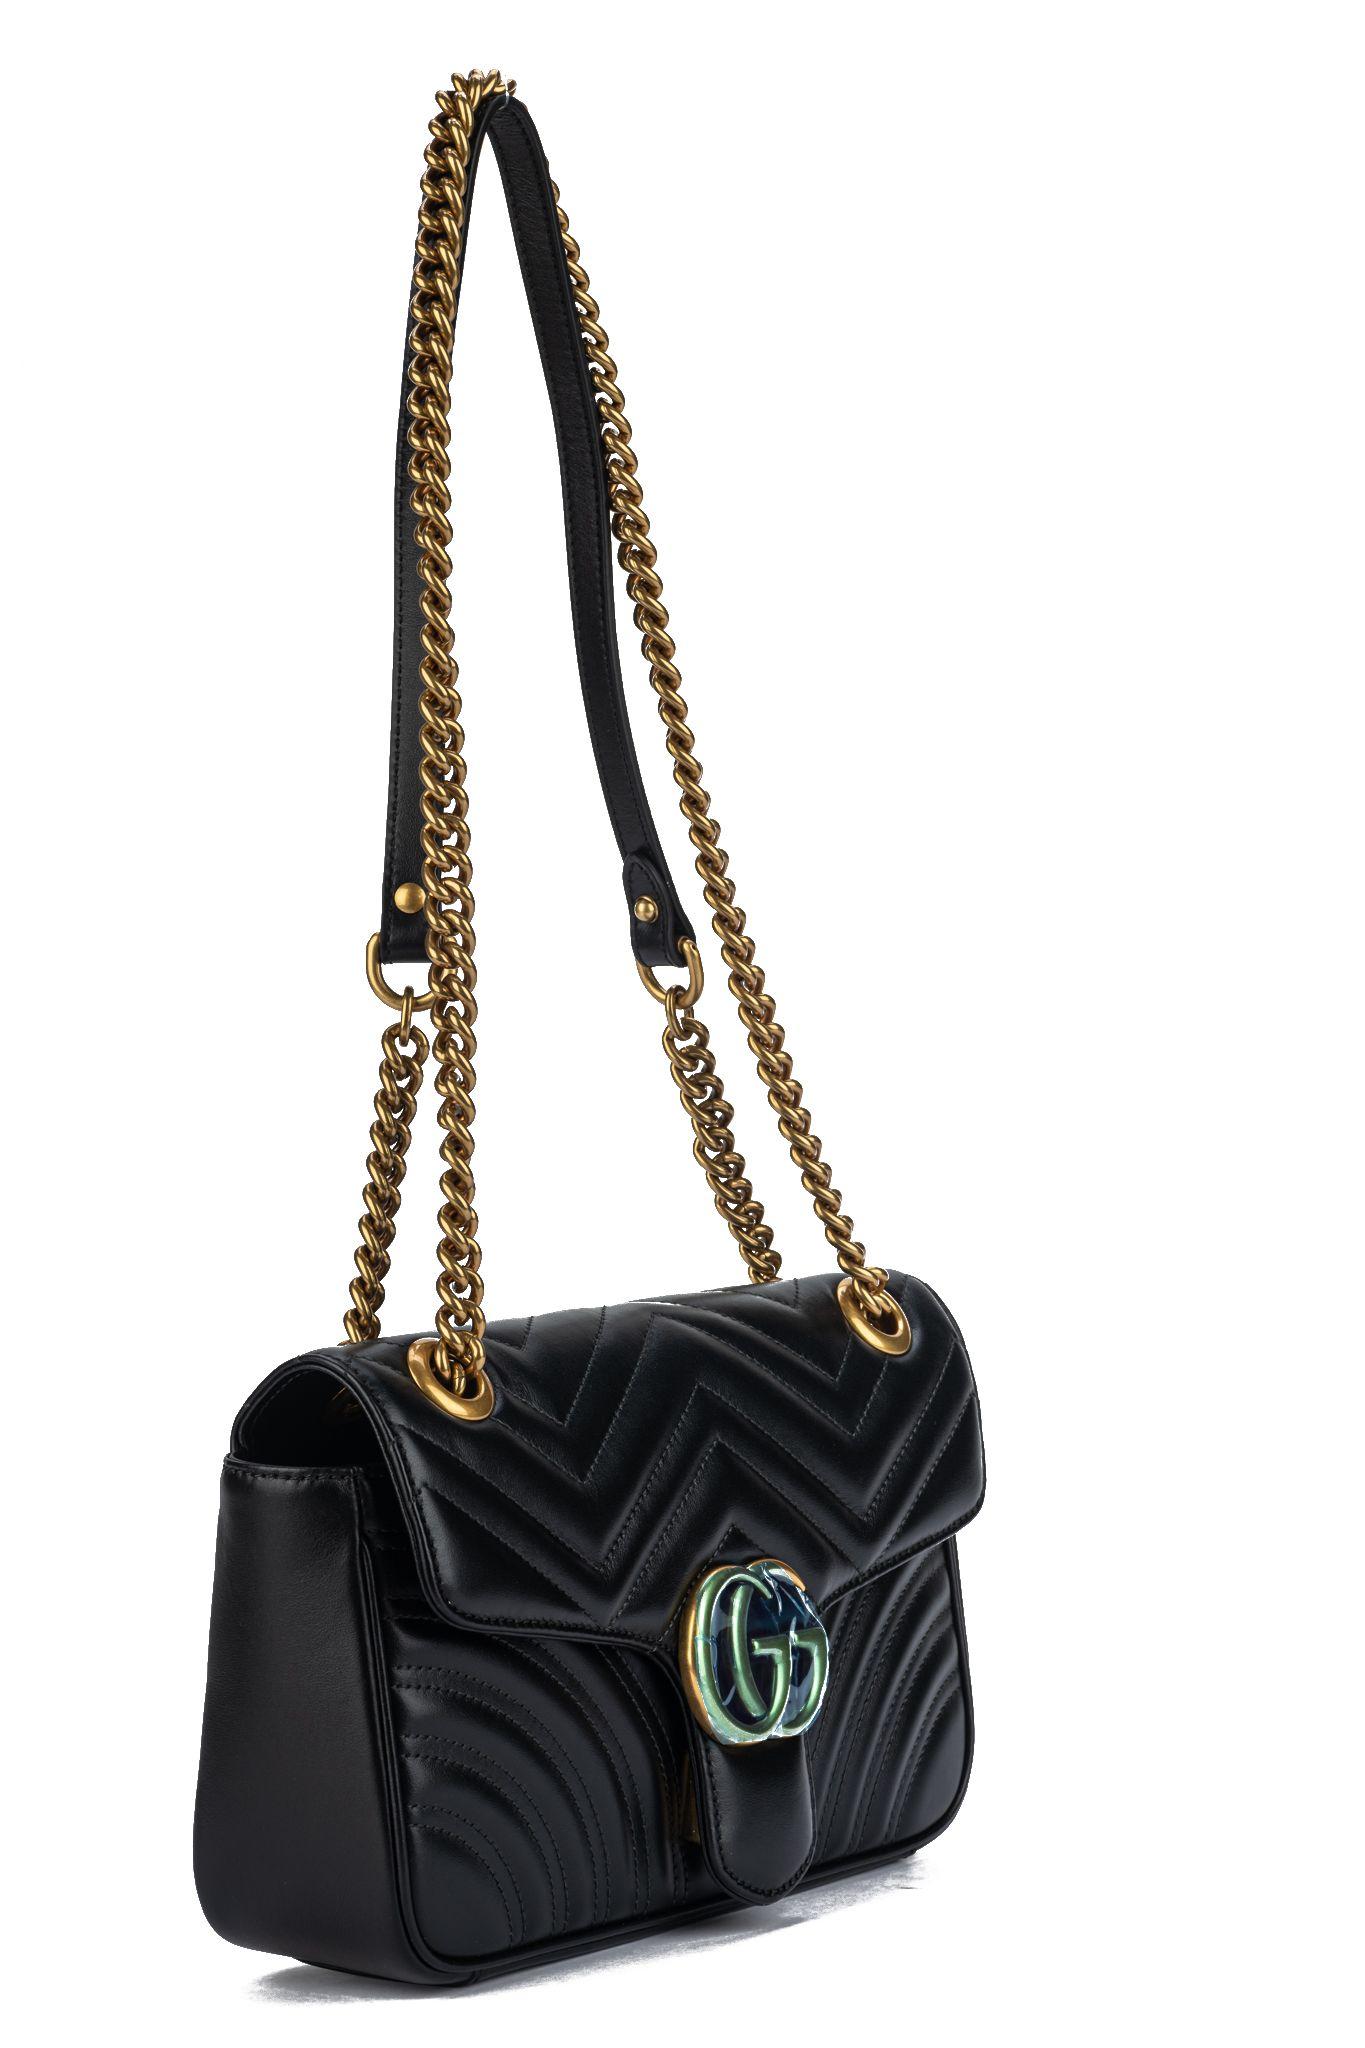 Gucci brandneue marmont kleine Handtasche aus schwarzem Leder und bronzefarbener Hardware. Schulterhöhe 12